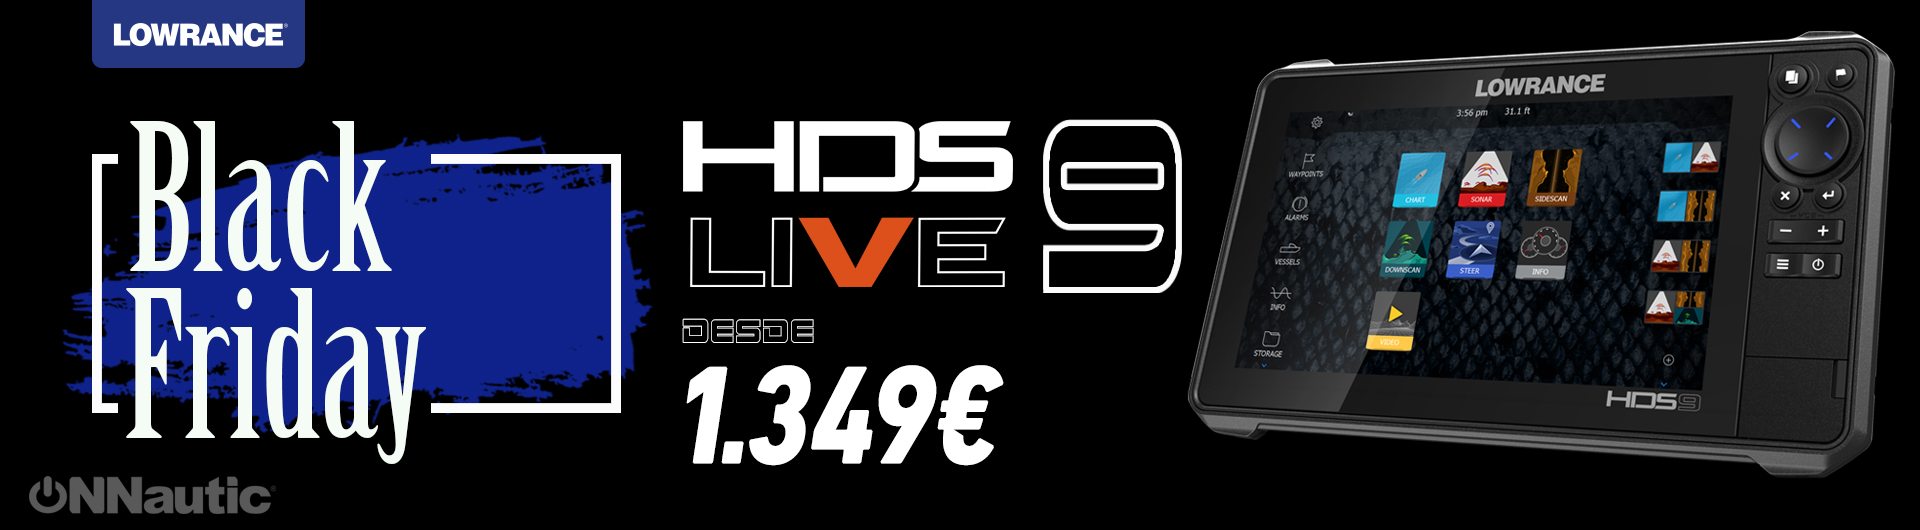 Black Friday en Lowrance HDS 9 Live desde 1049€